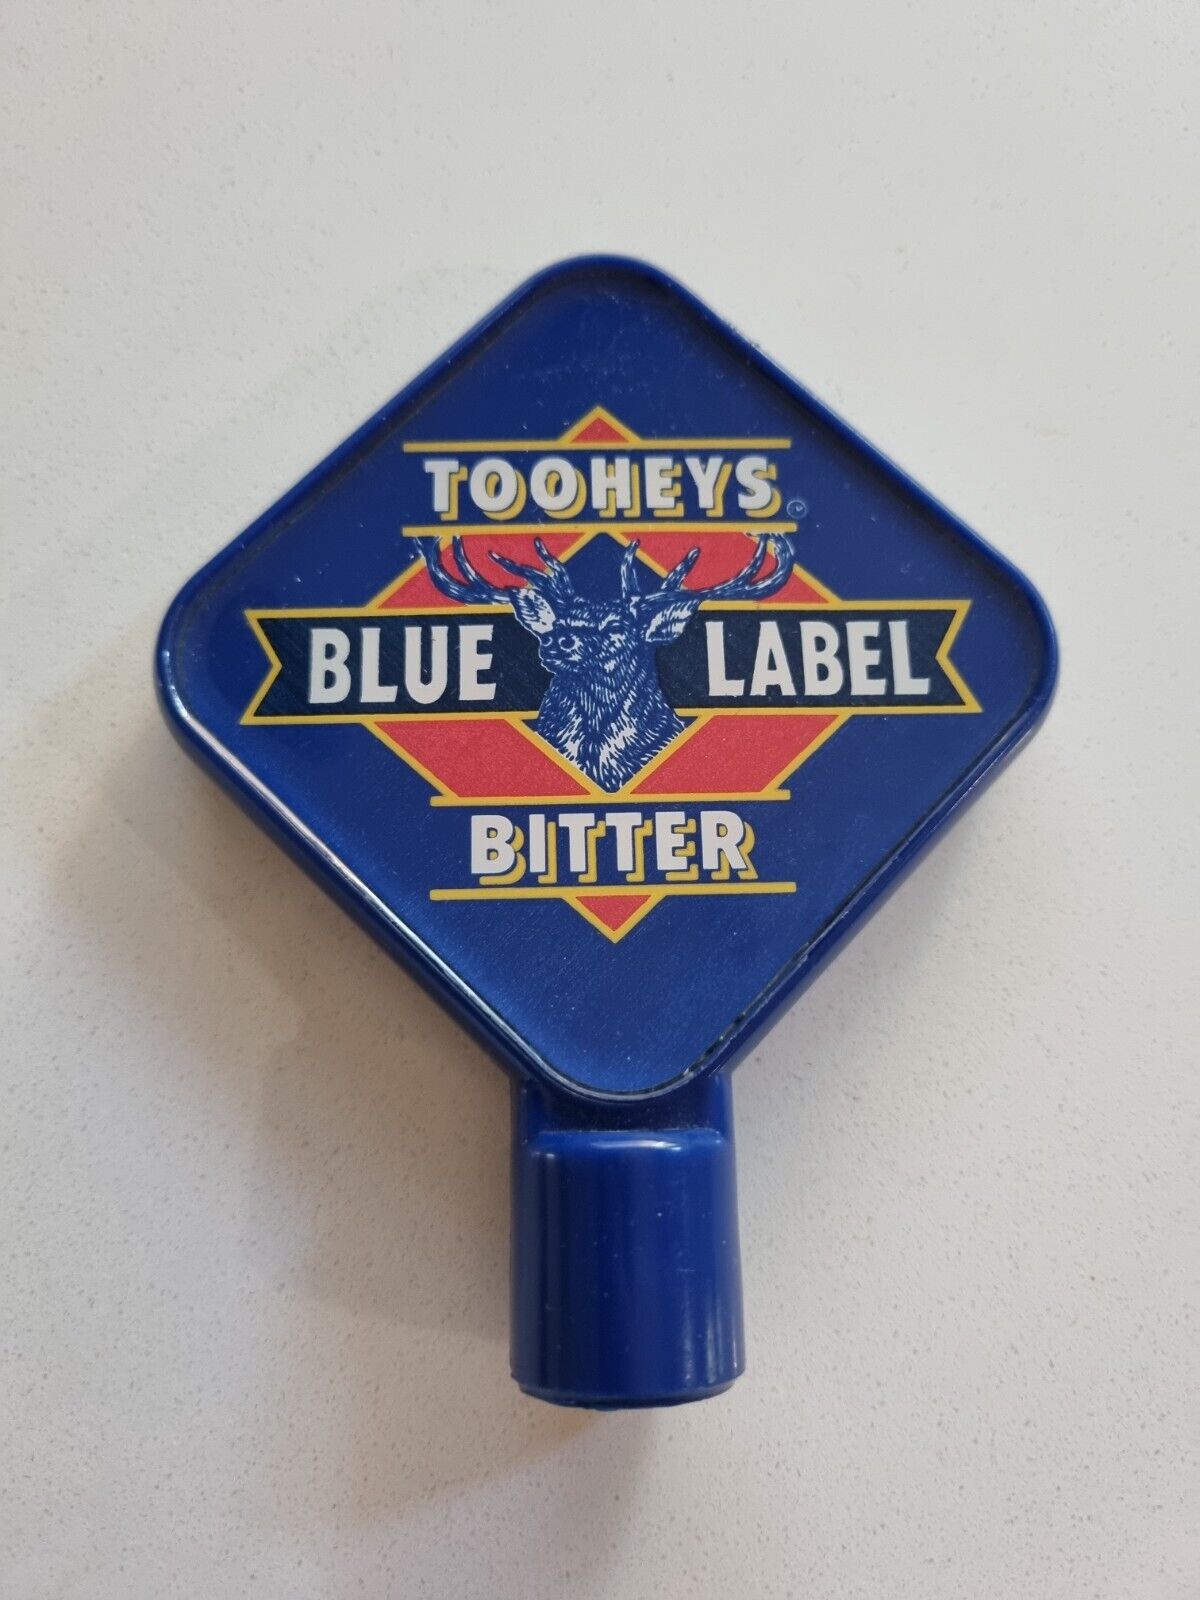 Tooheys Blue Label Light Bitter Ale Beer Tap Font Knob vintage retro